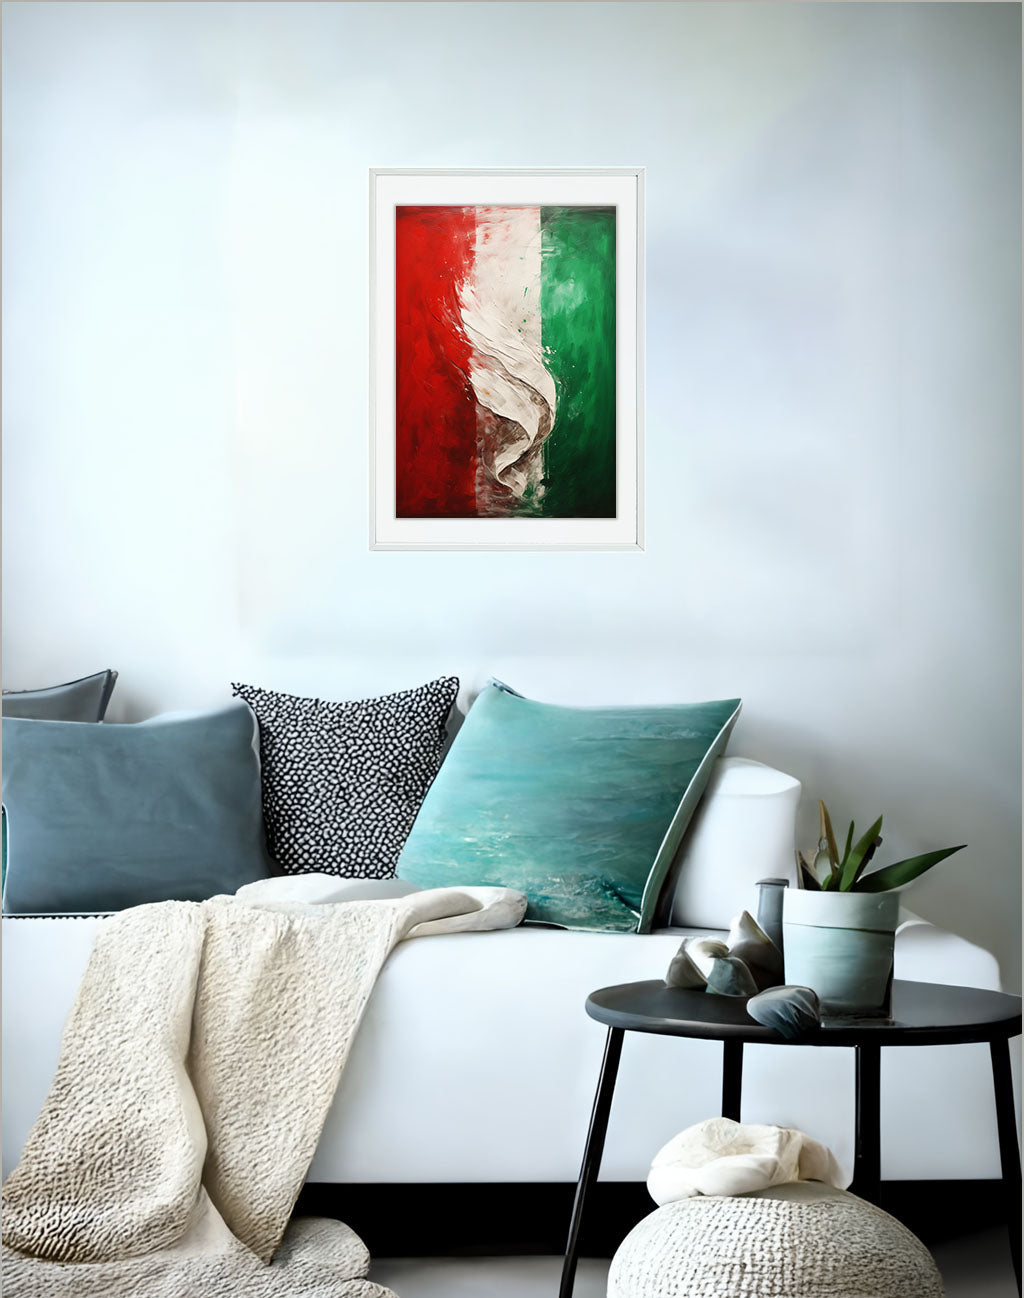 イタリアのアートポスター:italy_ef0b / 地図・都市_都市_のポスター画像ソファ近くに設置したイメージ